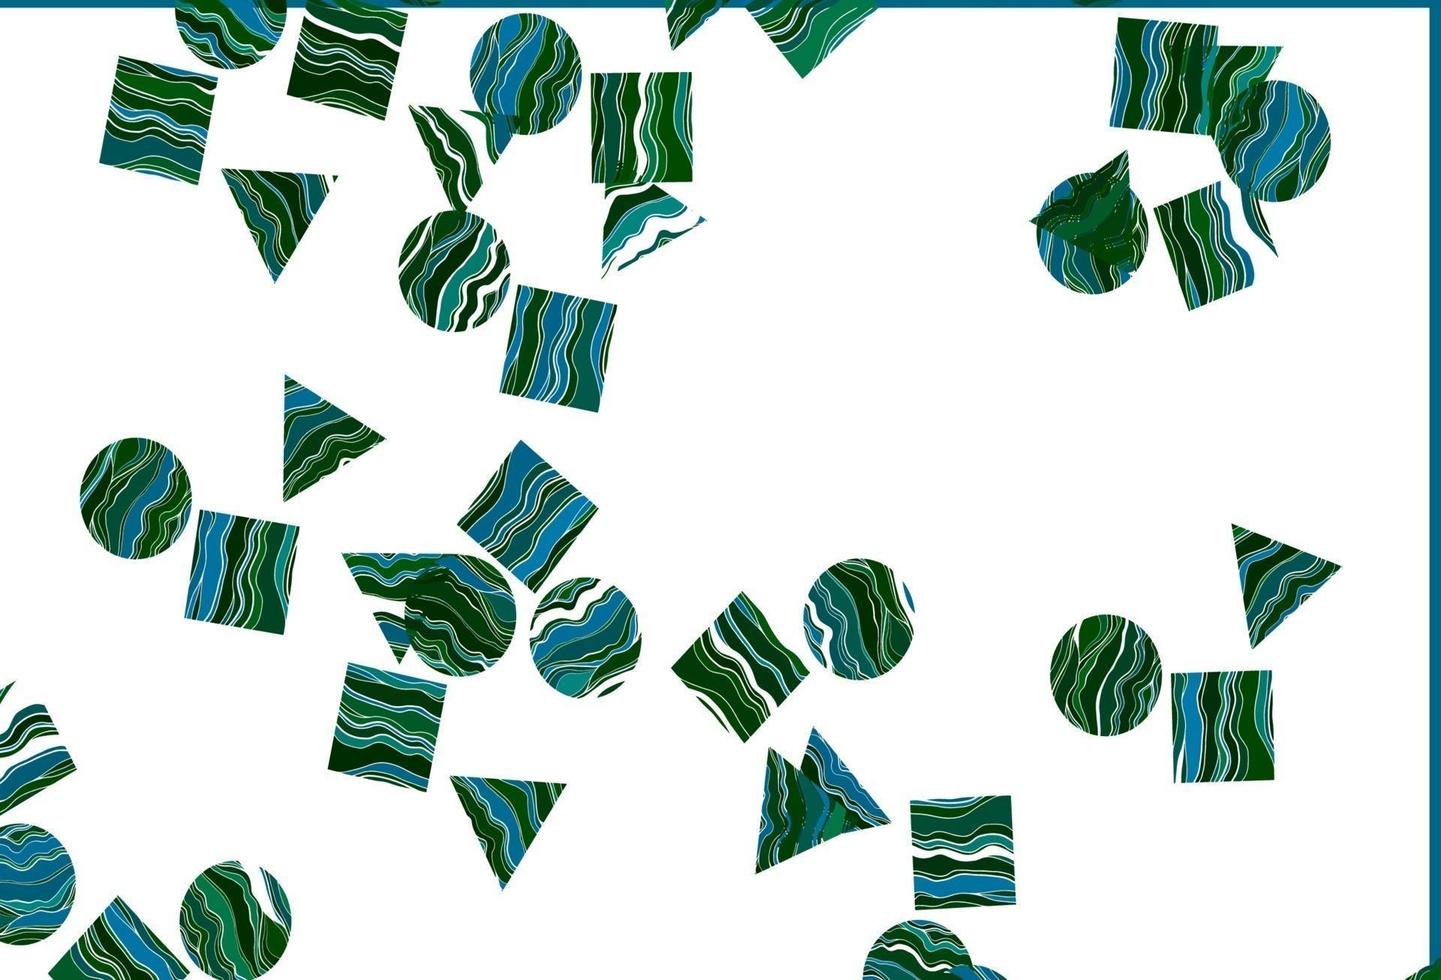 pano de fundo azul claro, verde do vetor com linhas, círculos, losango.